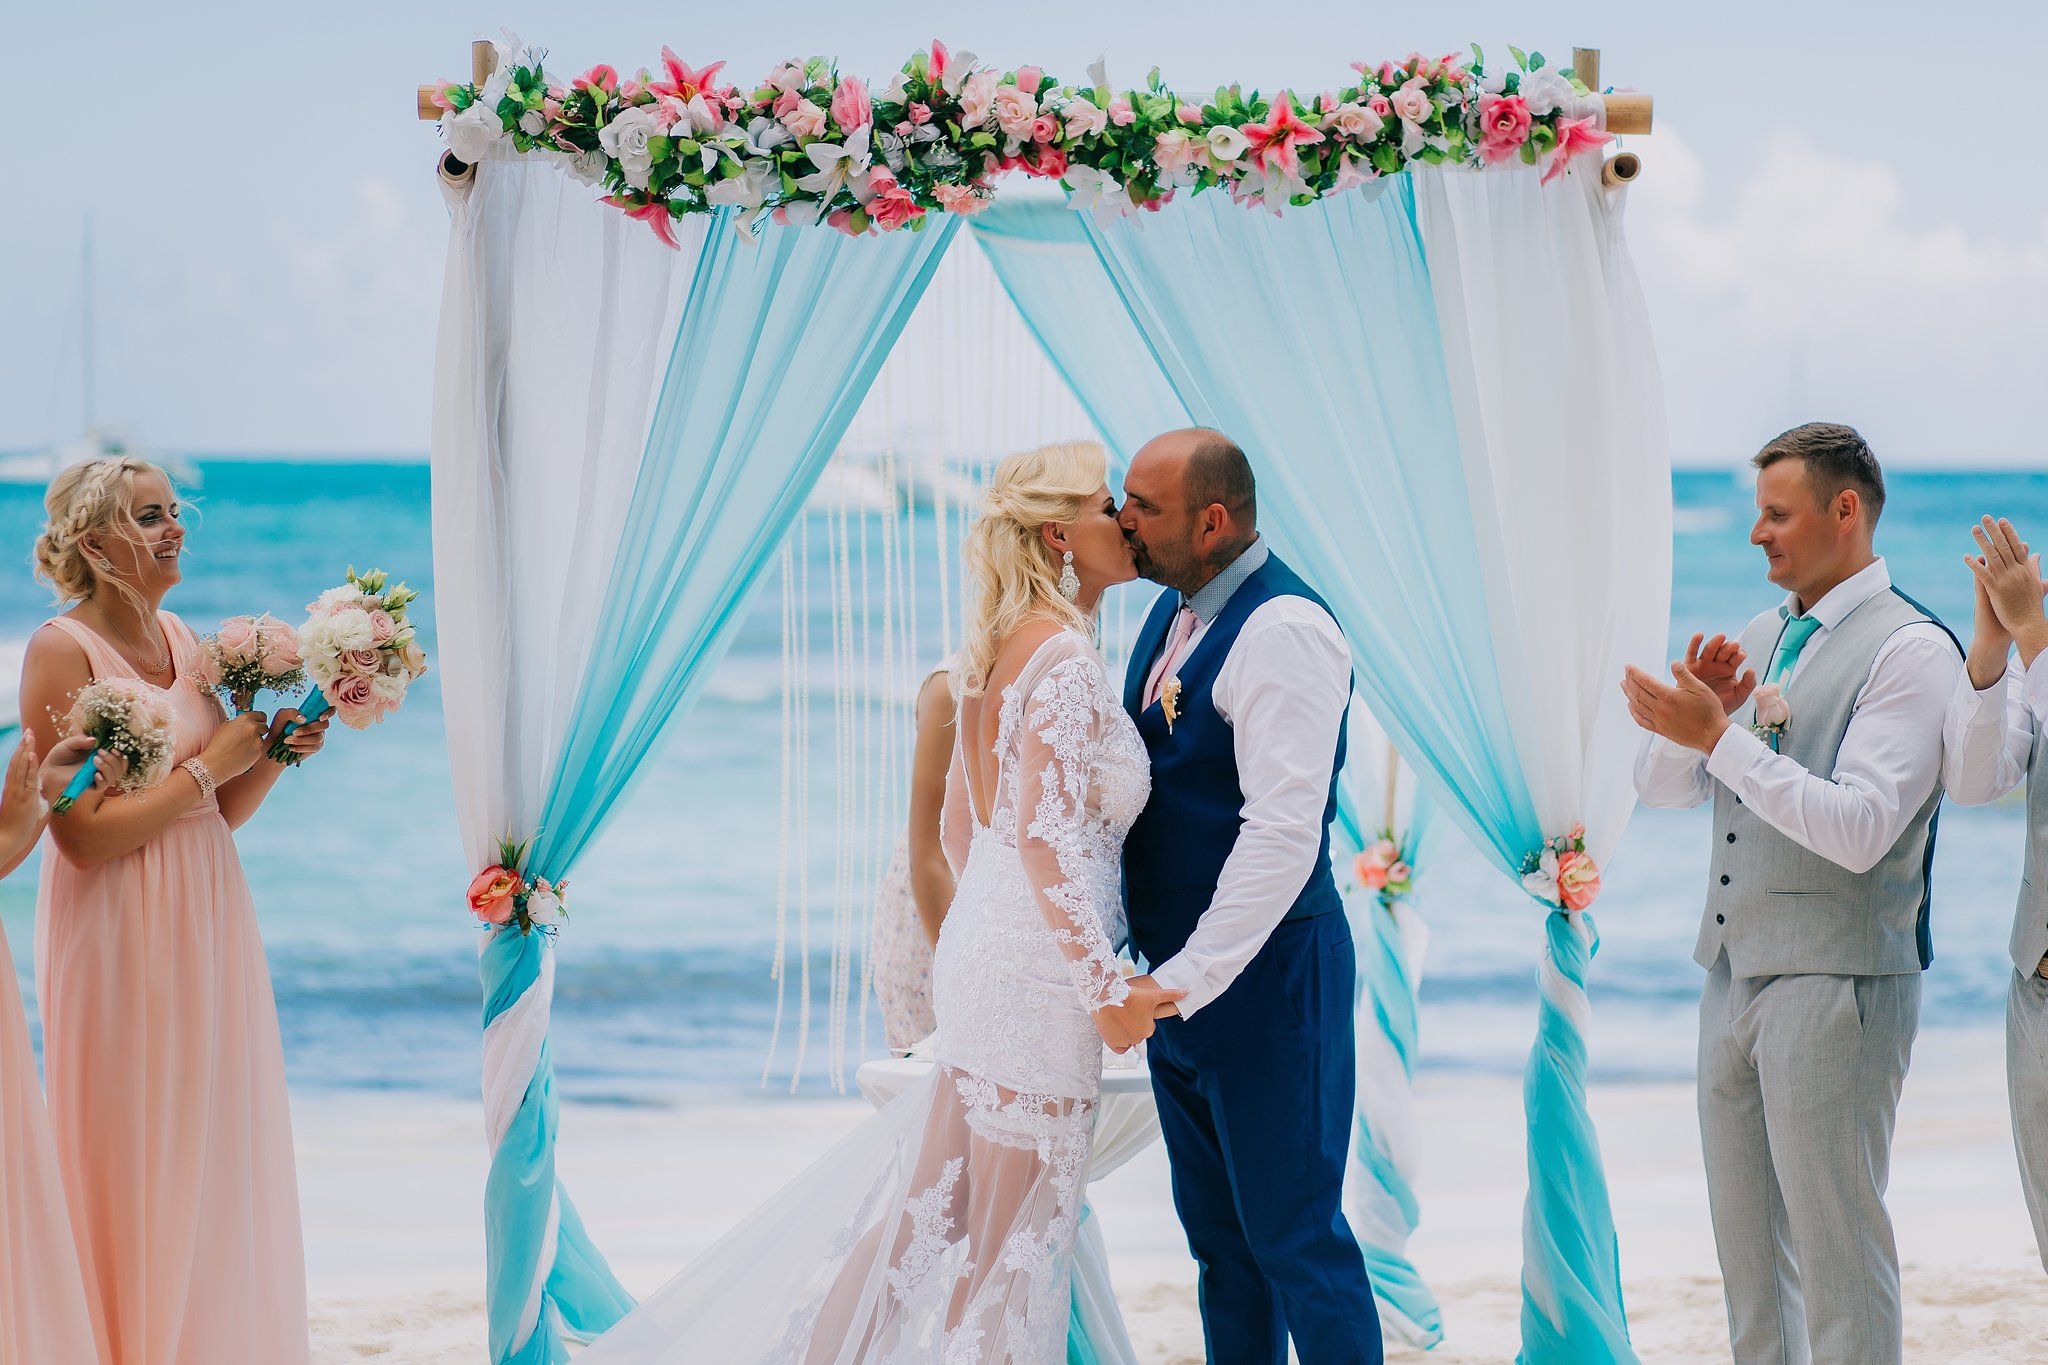 Wedding Agency Punta Cana